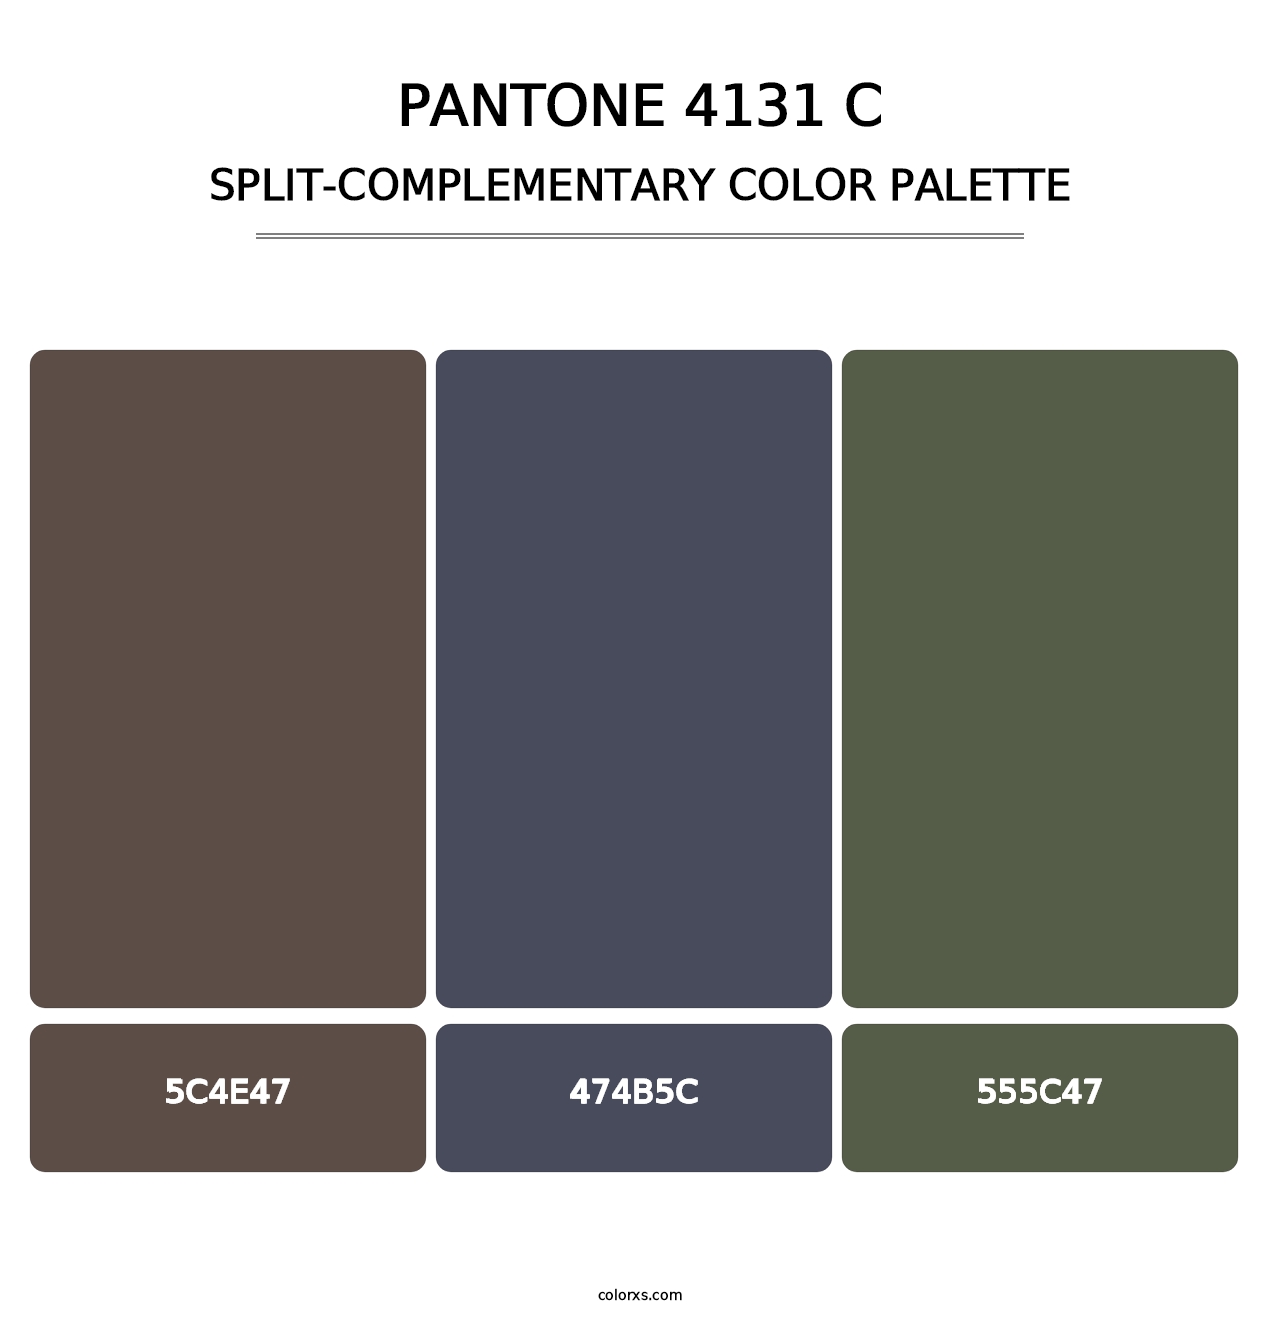 PANTONE 4131 C - Split-Complementary Color Palette